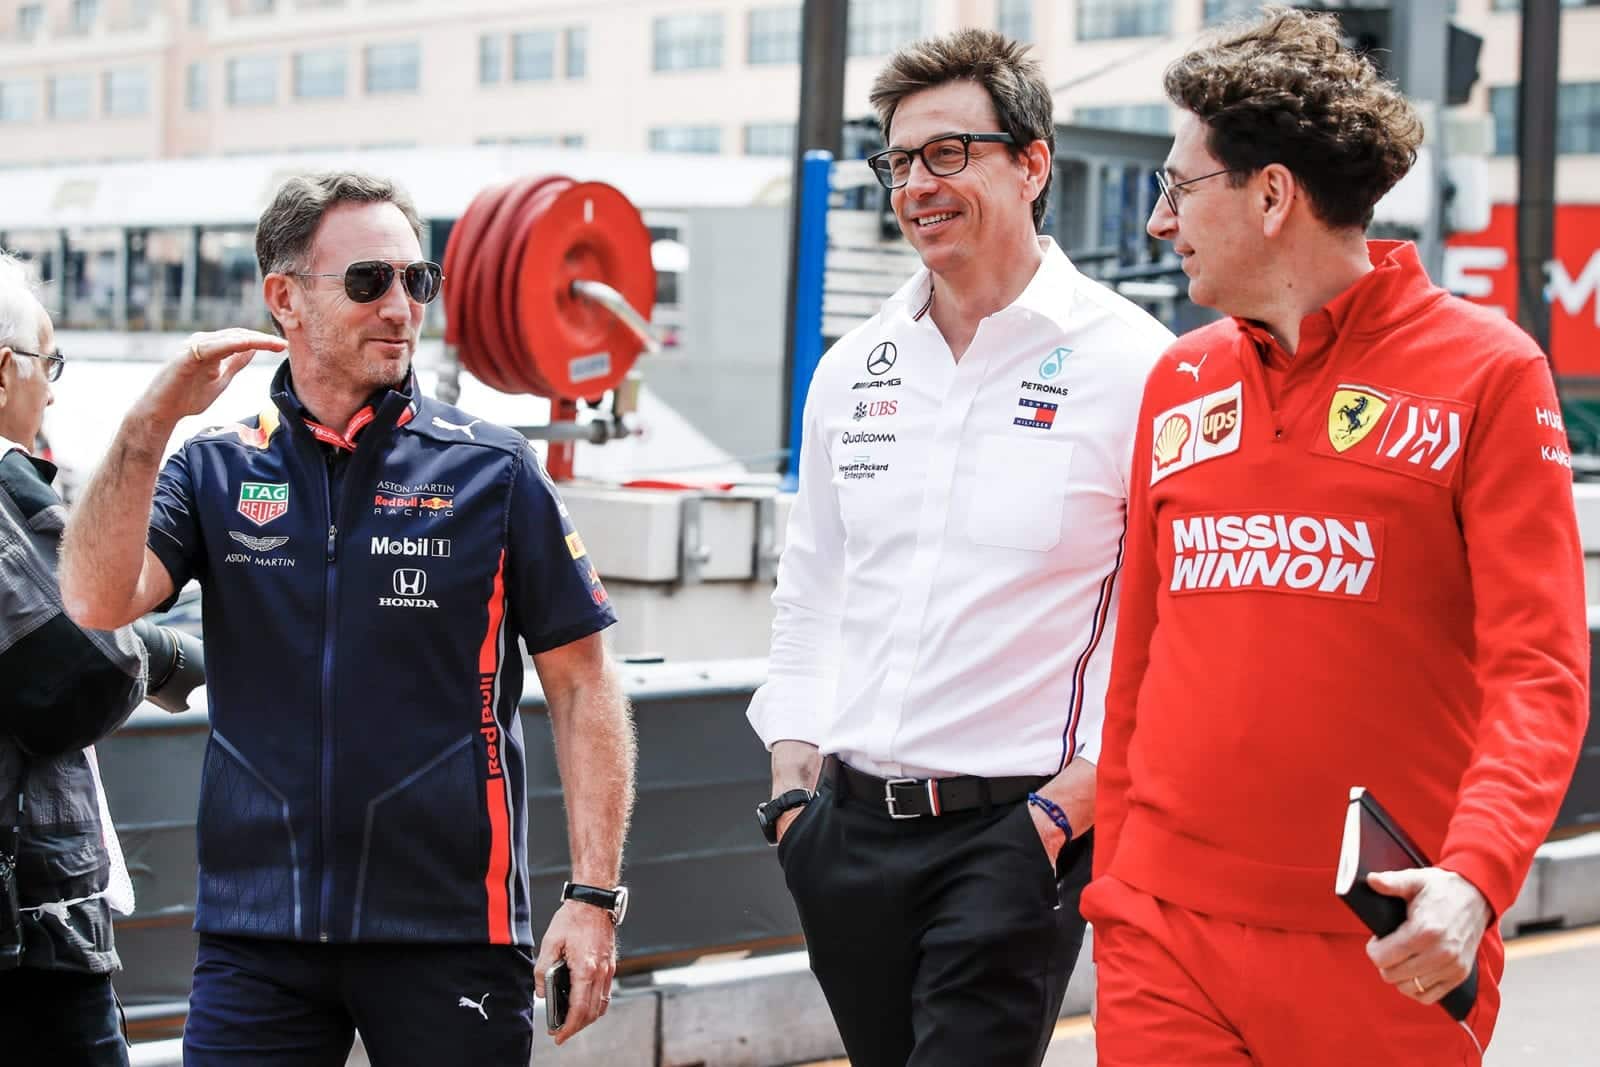 Christian Horner, Toto Wolff and Mattia Binotto at the 2019 Monaco Grand Prix